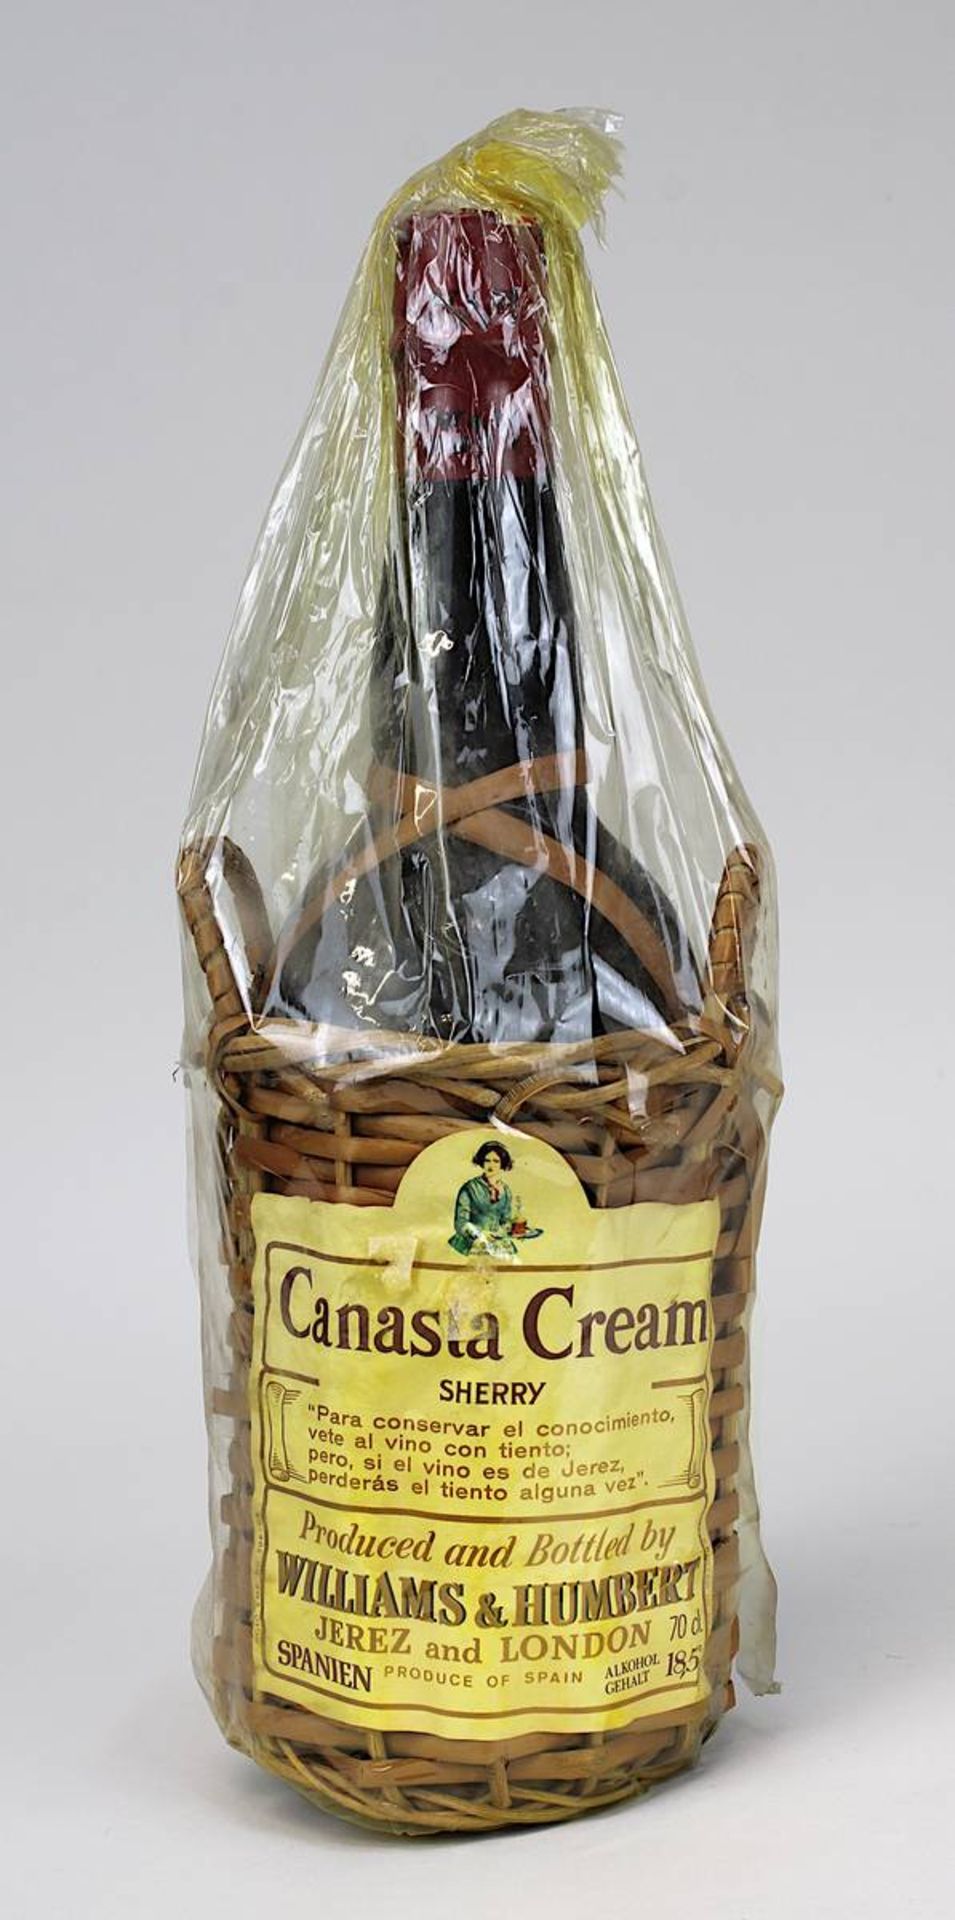 1 Flasche Canasta Cream Sherry, wohl 1960/70er Jahre, Williams & Humbert, Jerez - London, Spanien,